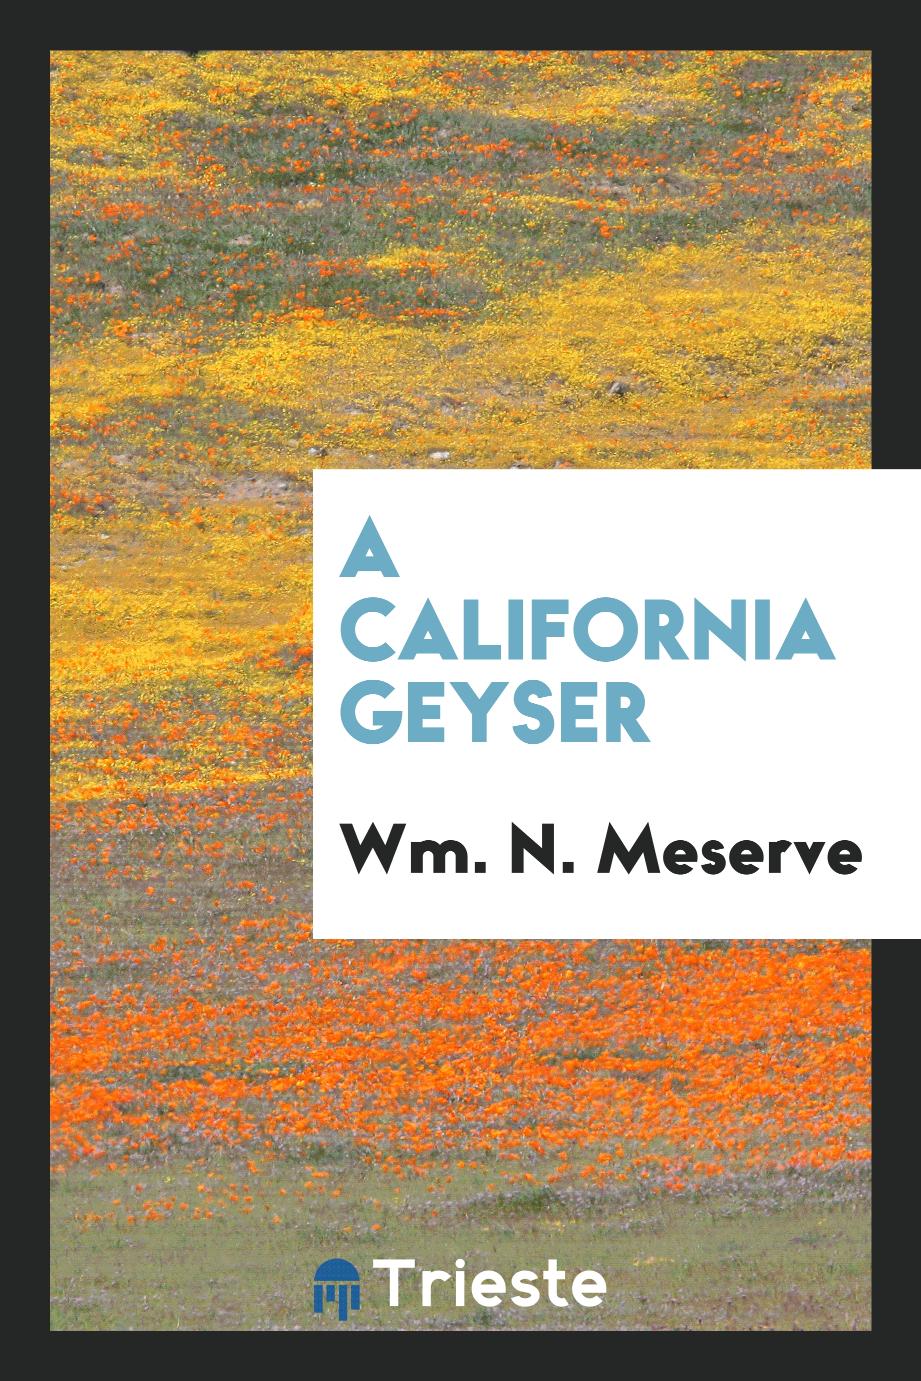 A California geyser